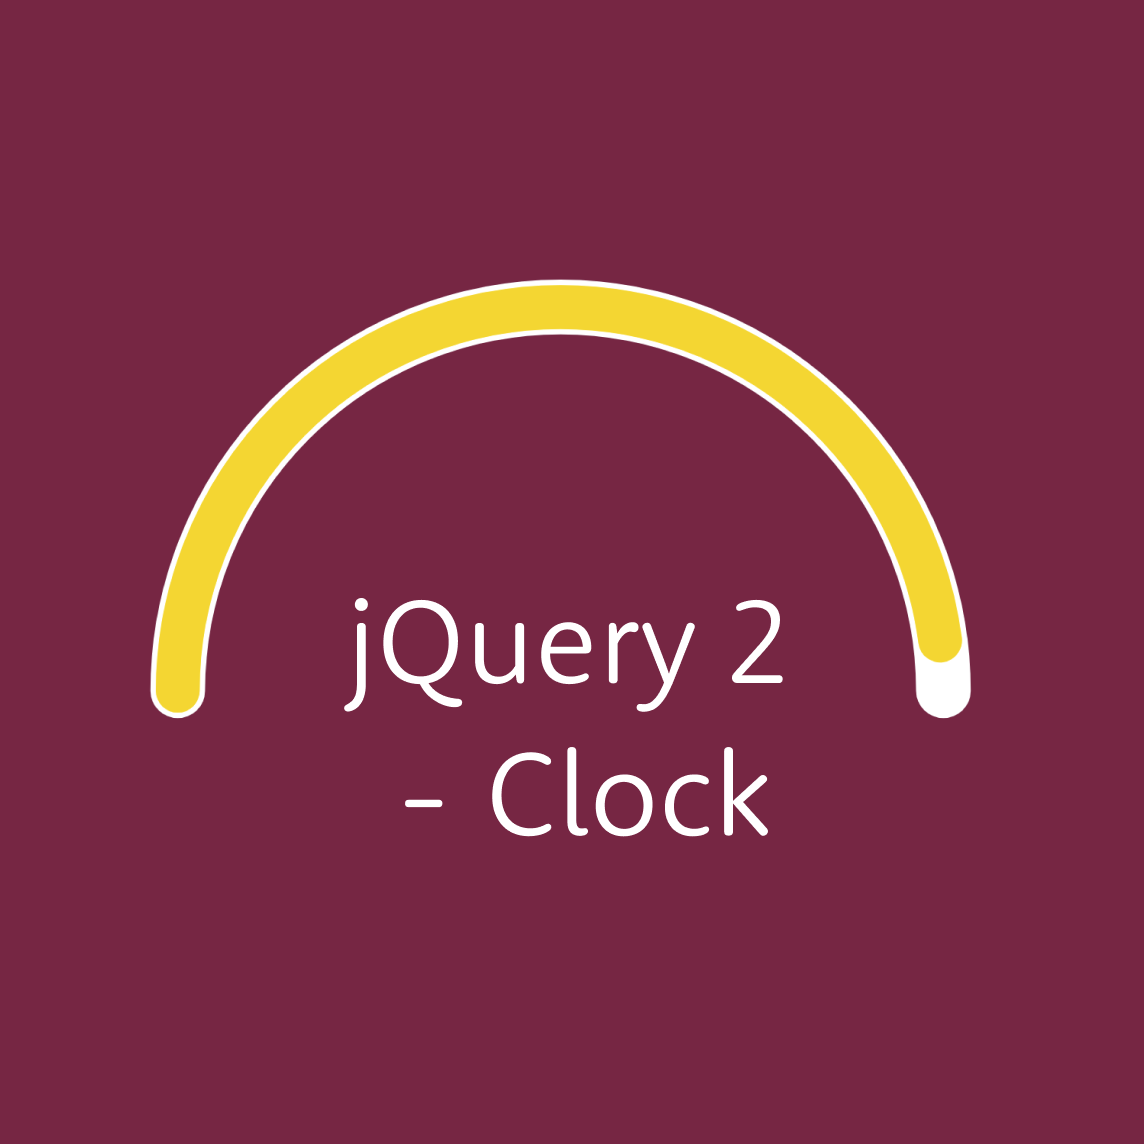 JQuery 2 - Clock